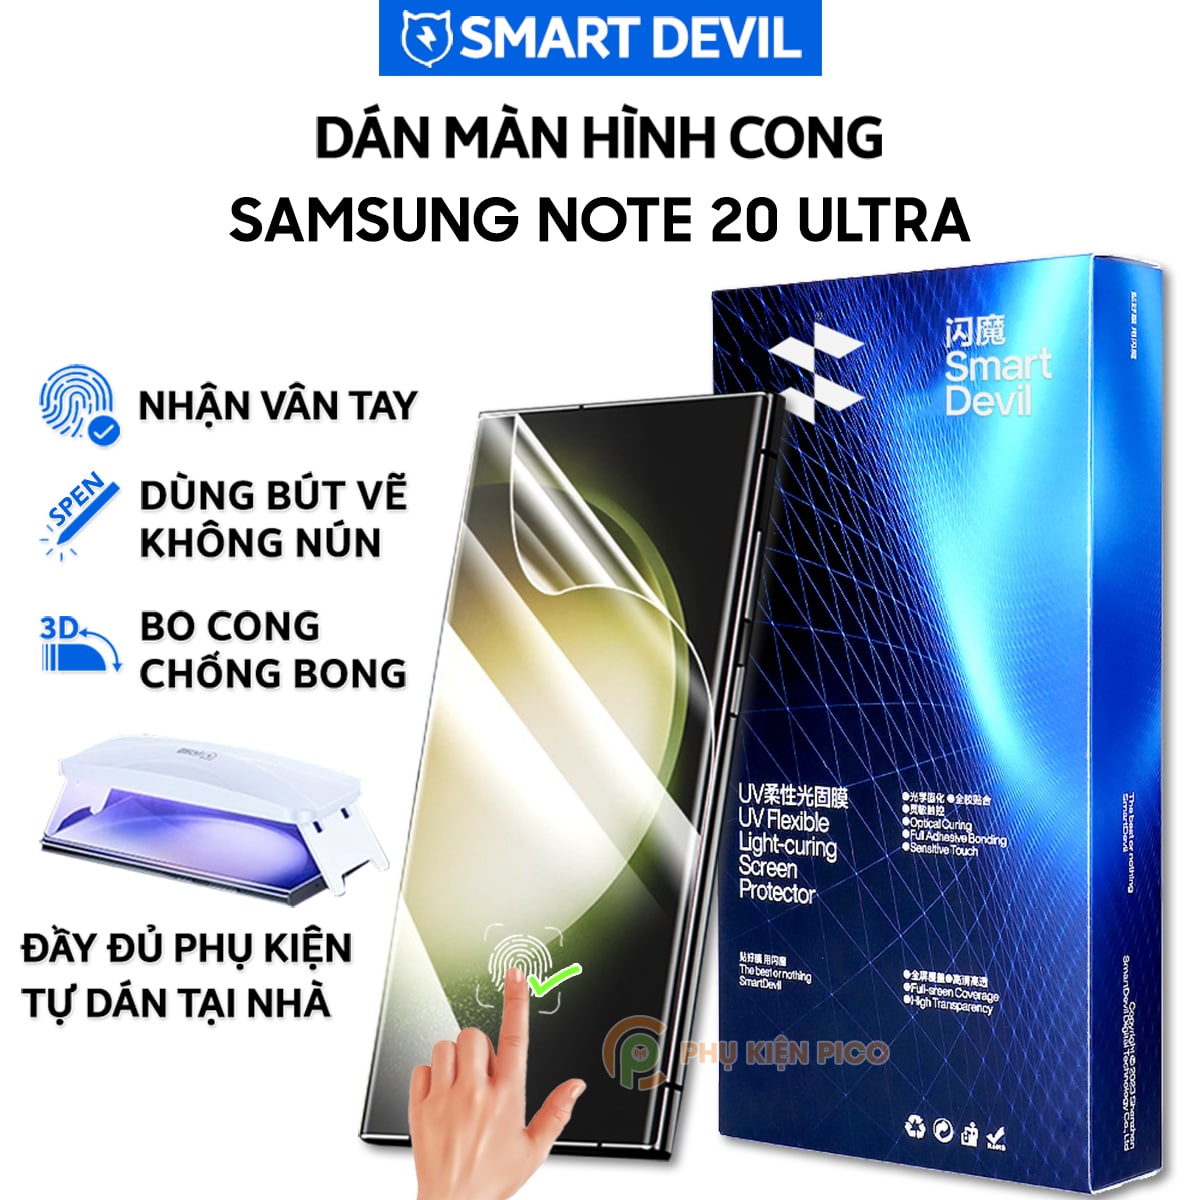 Dán màn hình Samsung Galaxy Note 20 Ultra PPF UV Smart Devil full màn hình dẻo trong suốt